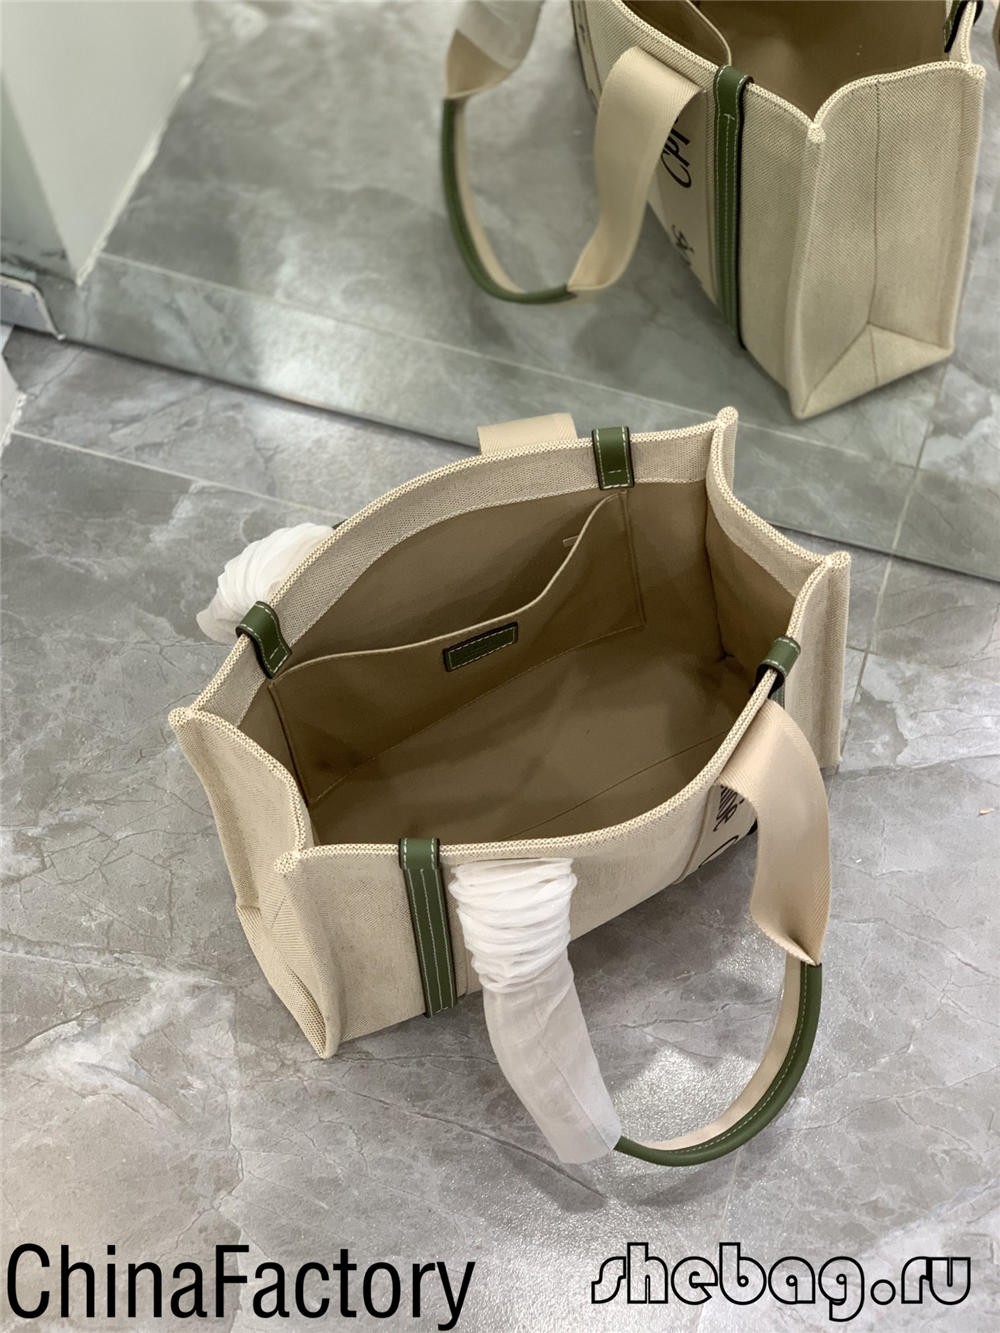 Làm thế nào để mua túi cloe chất lượng tốt nhất tại NYC? (Cập nhật năm 2022) -Túi Louis Vuitton giả chất lượng tốt nhất Cửa hàng trực tuyến, túi thiết kế bản sao ru